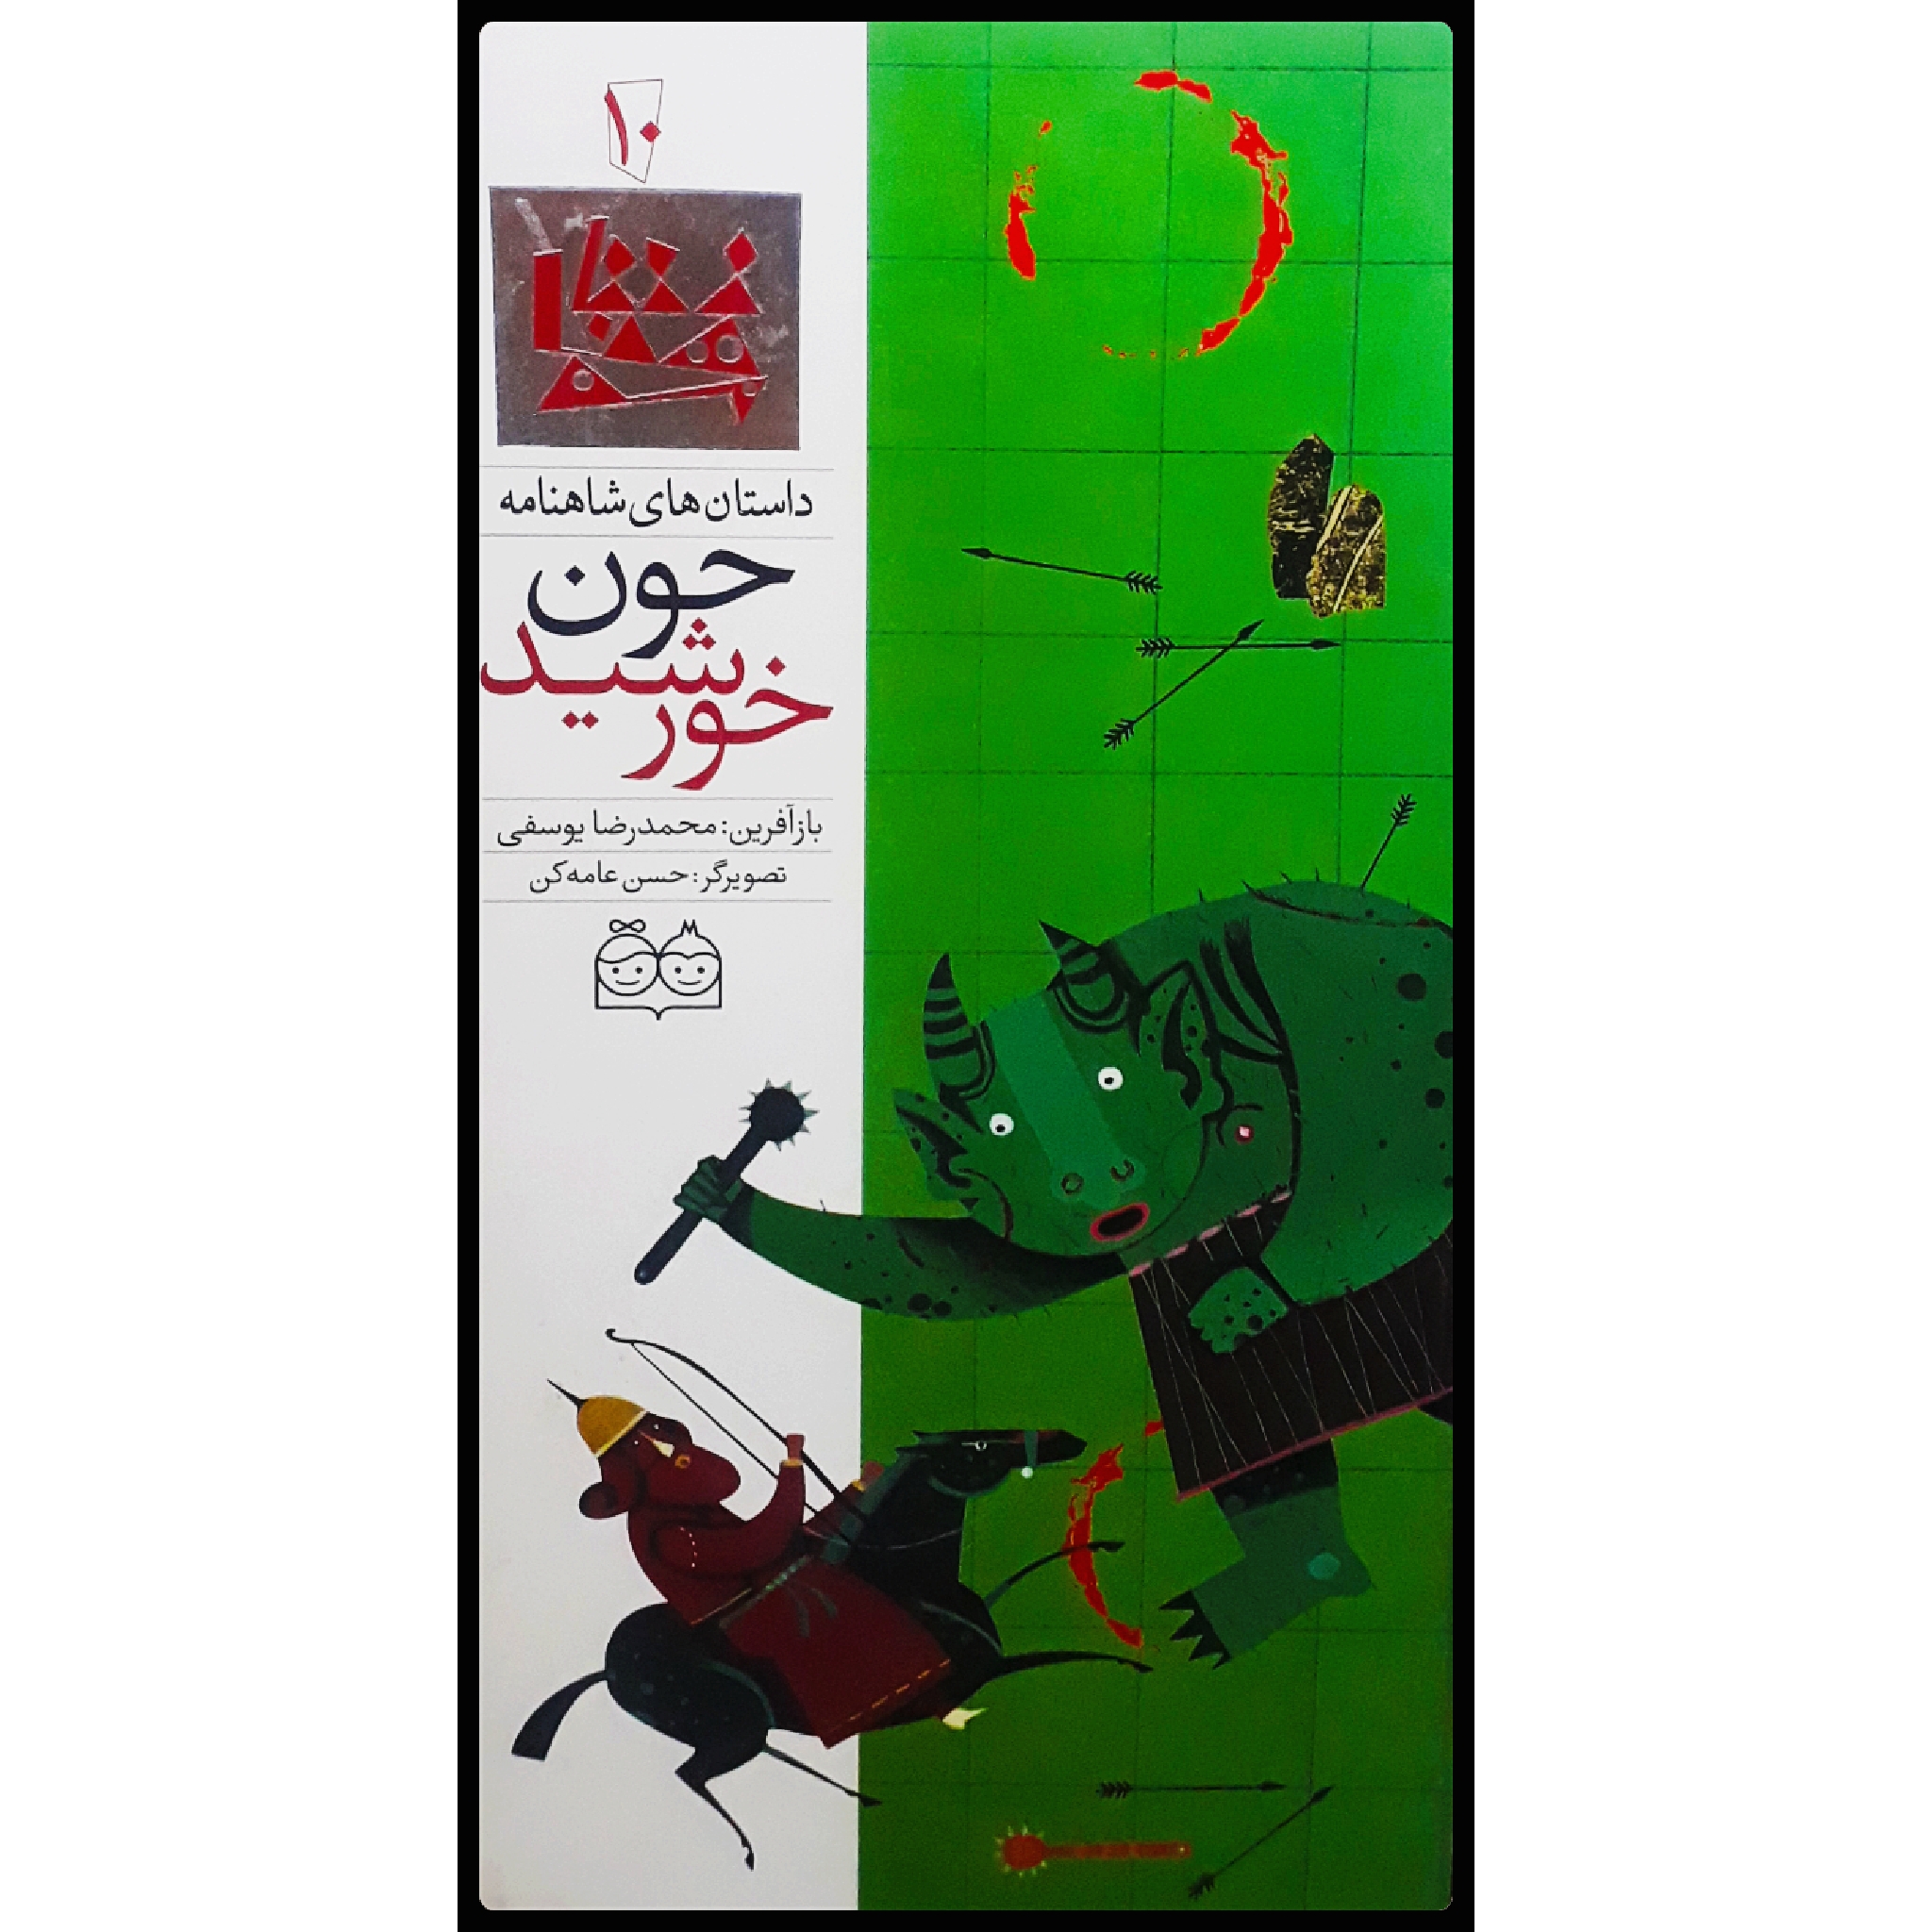 كتاب داستان هاي شاهنامه، چون خورشيد اثر محمدرضا يوسفي نشر خانه ادبيات جلد 10